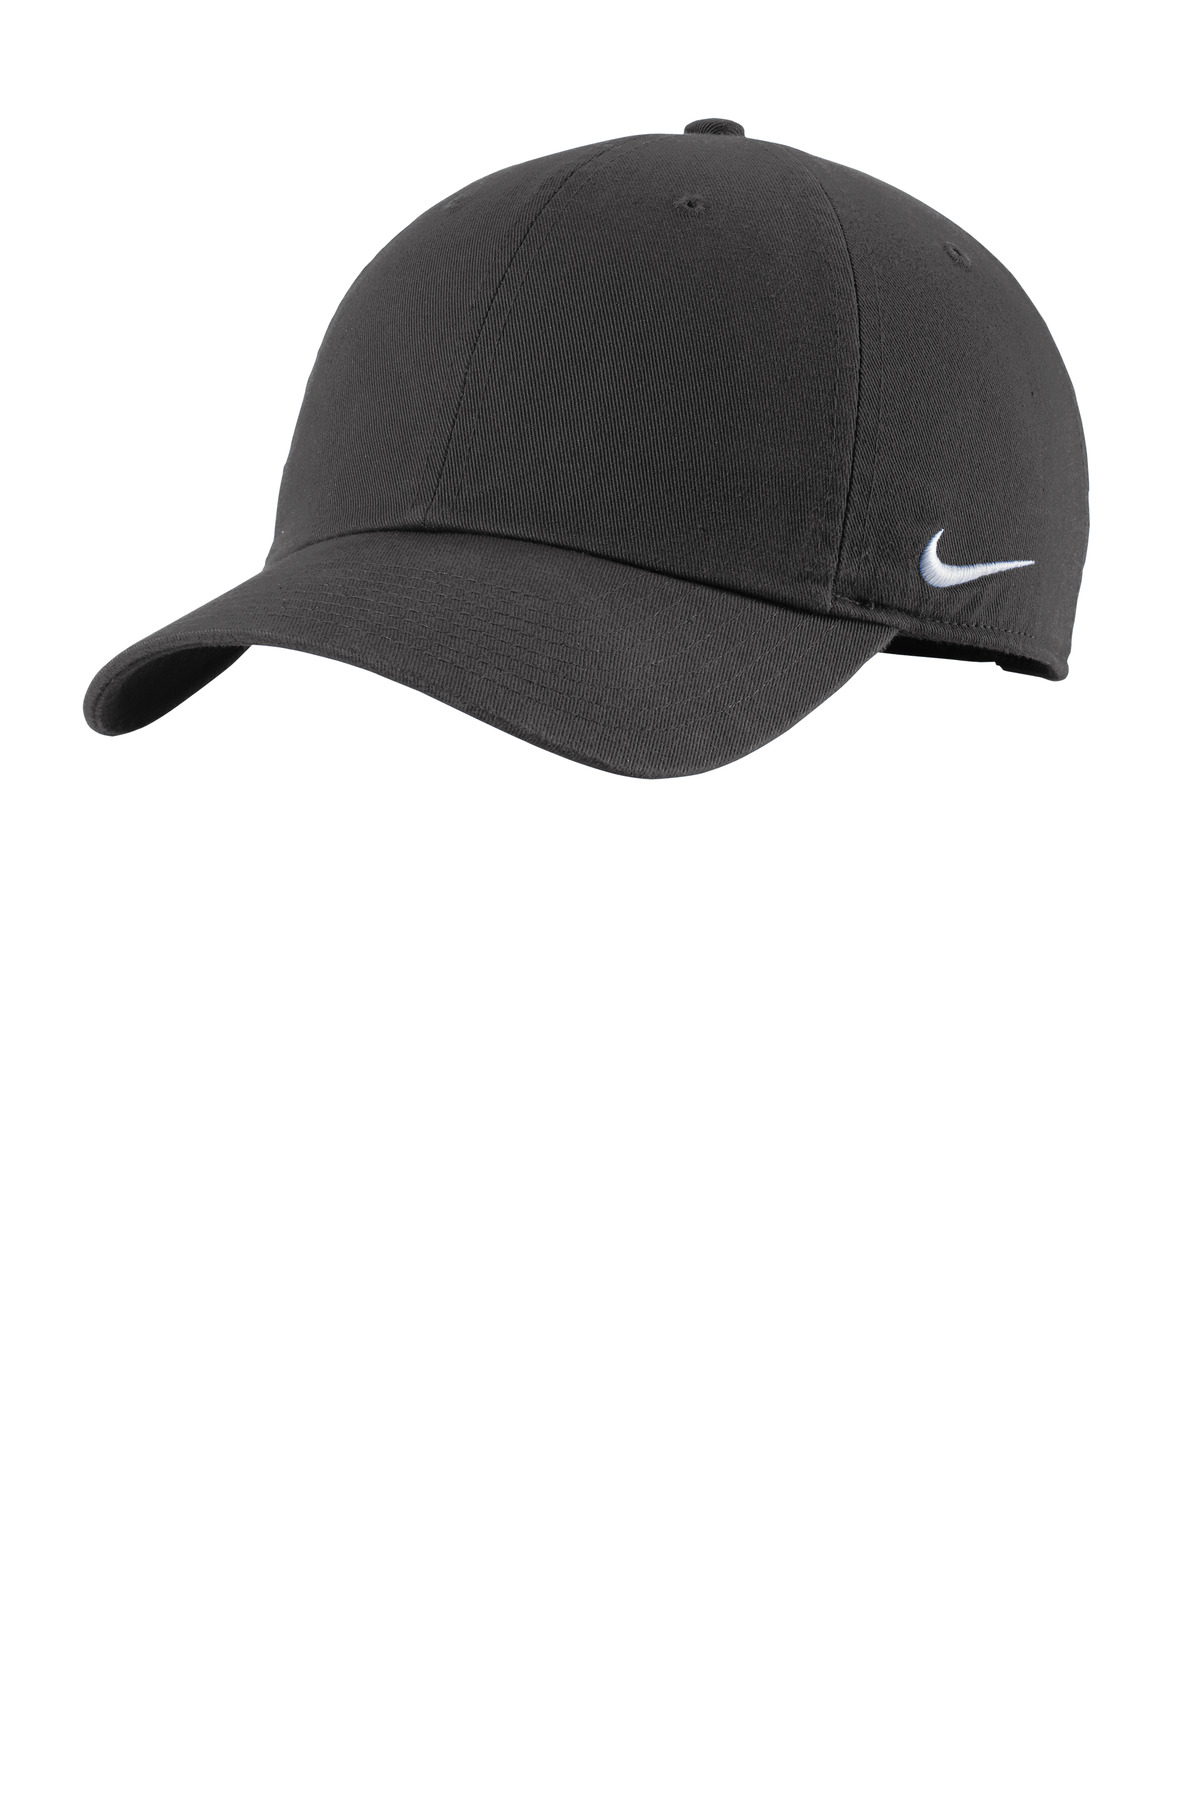 Nike Heritage Cotton Twill Cap-Nike